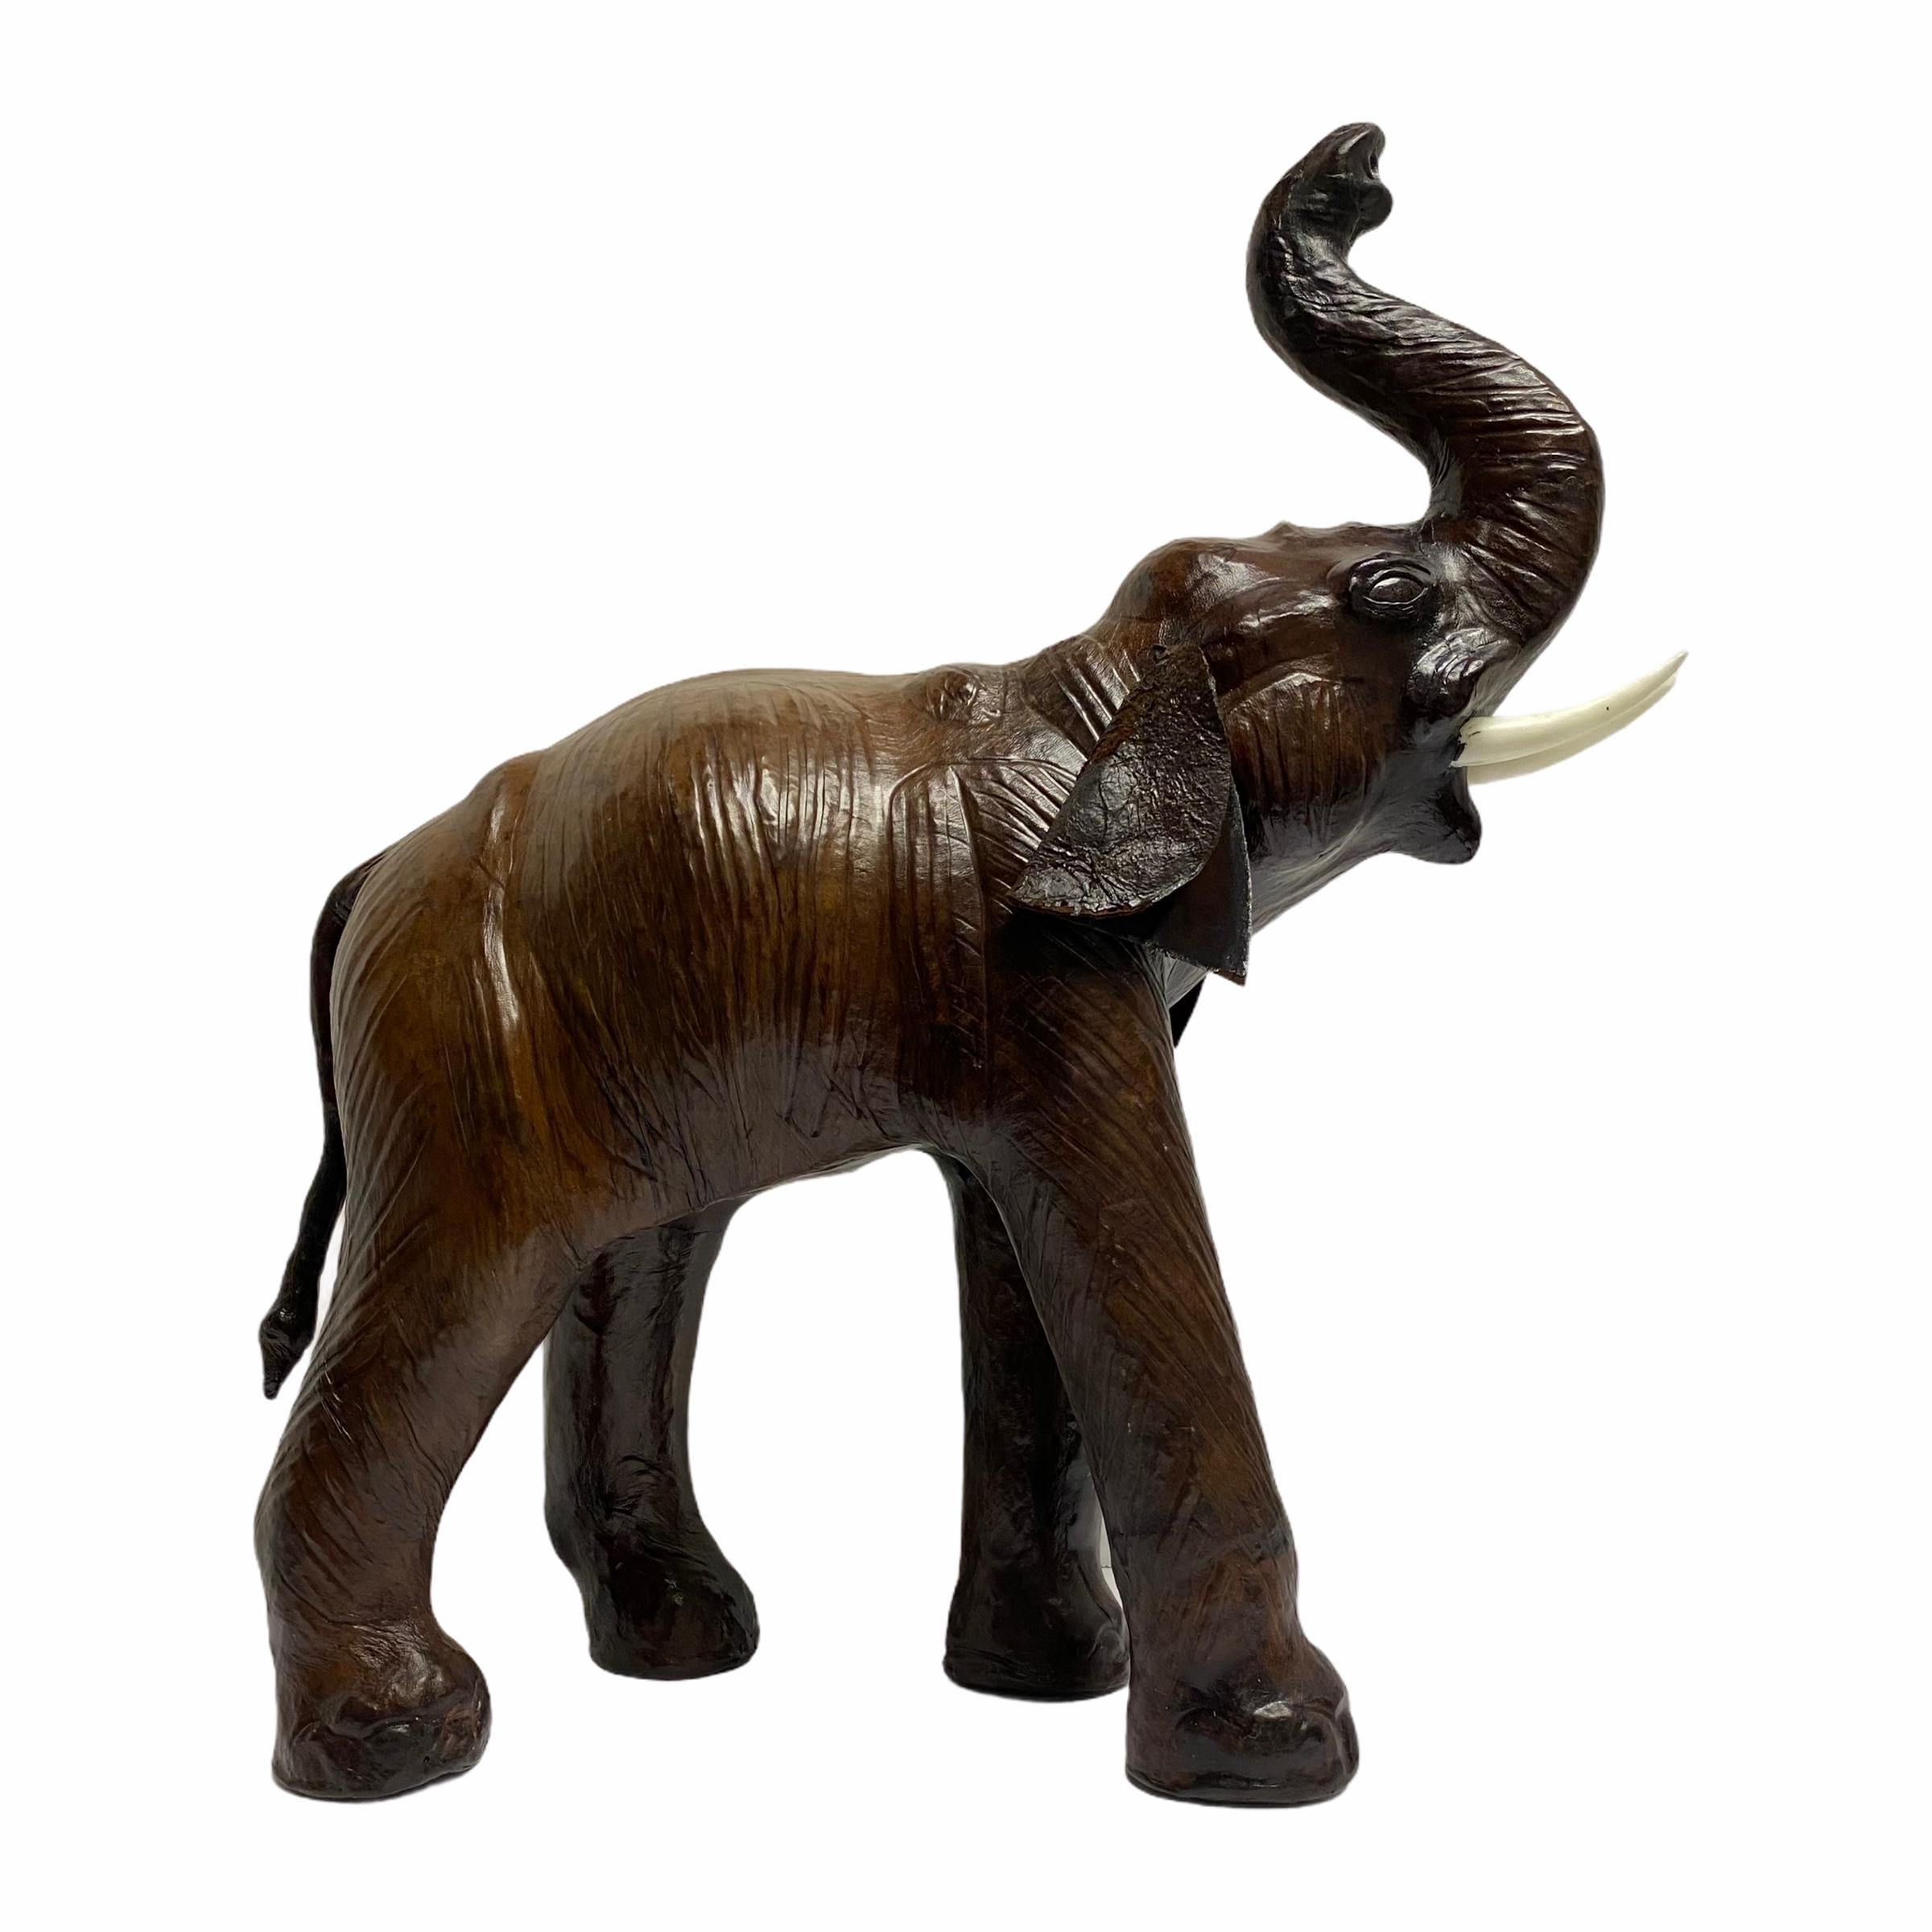 Elefantenfigur aus Leder.